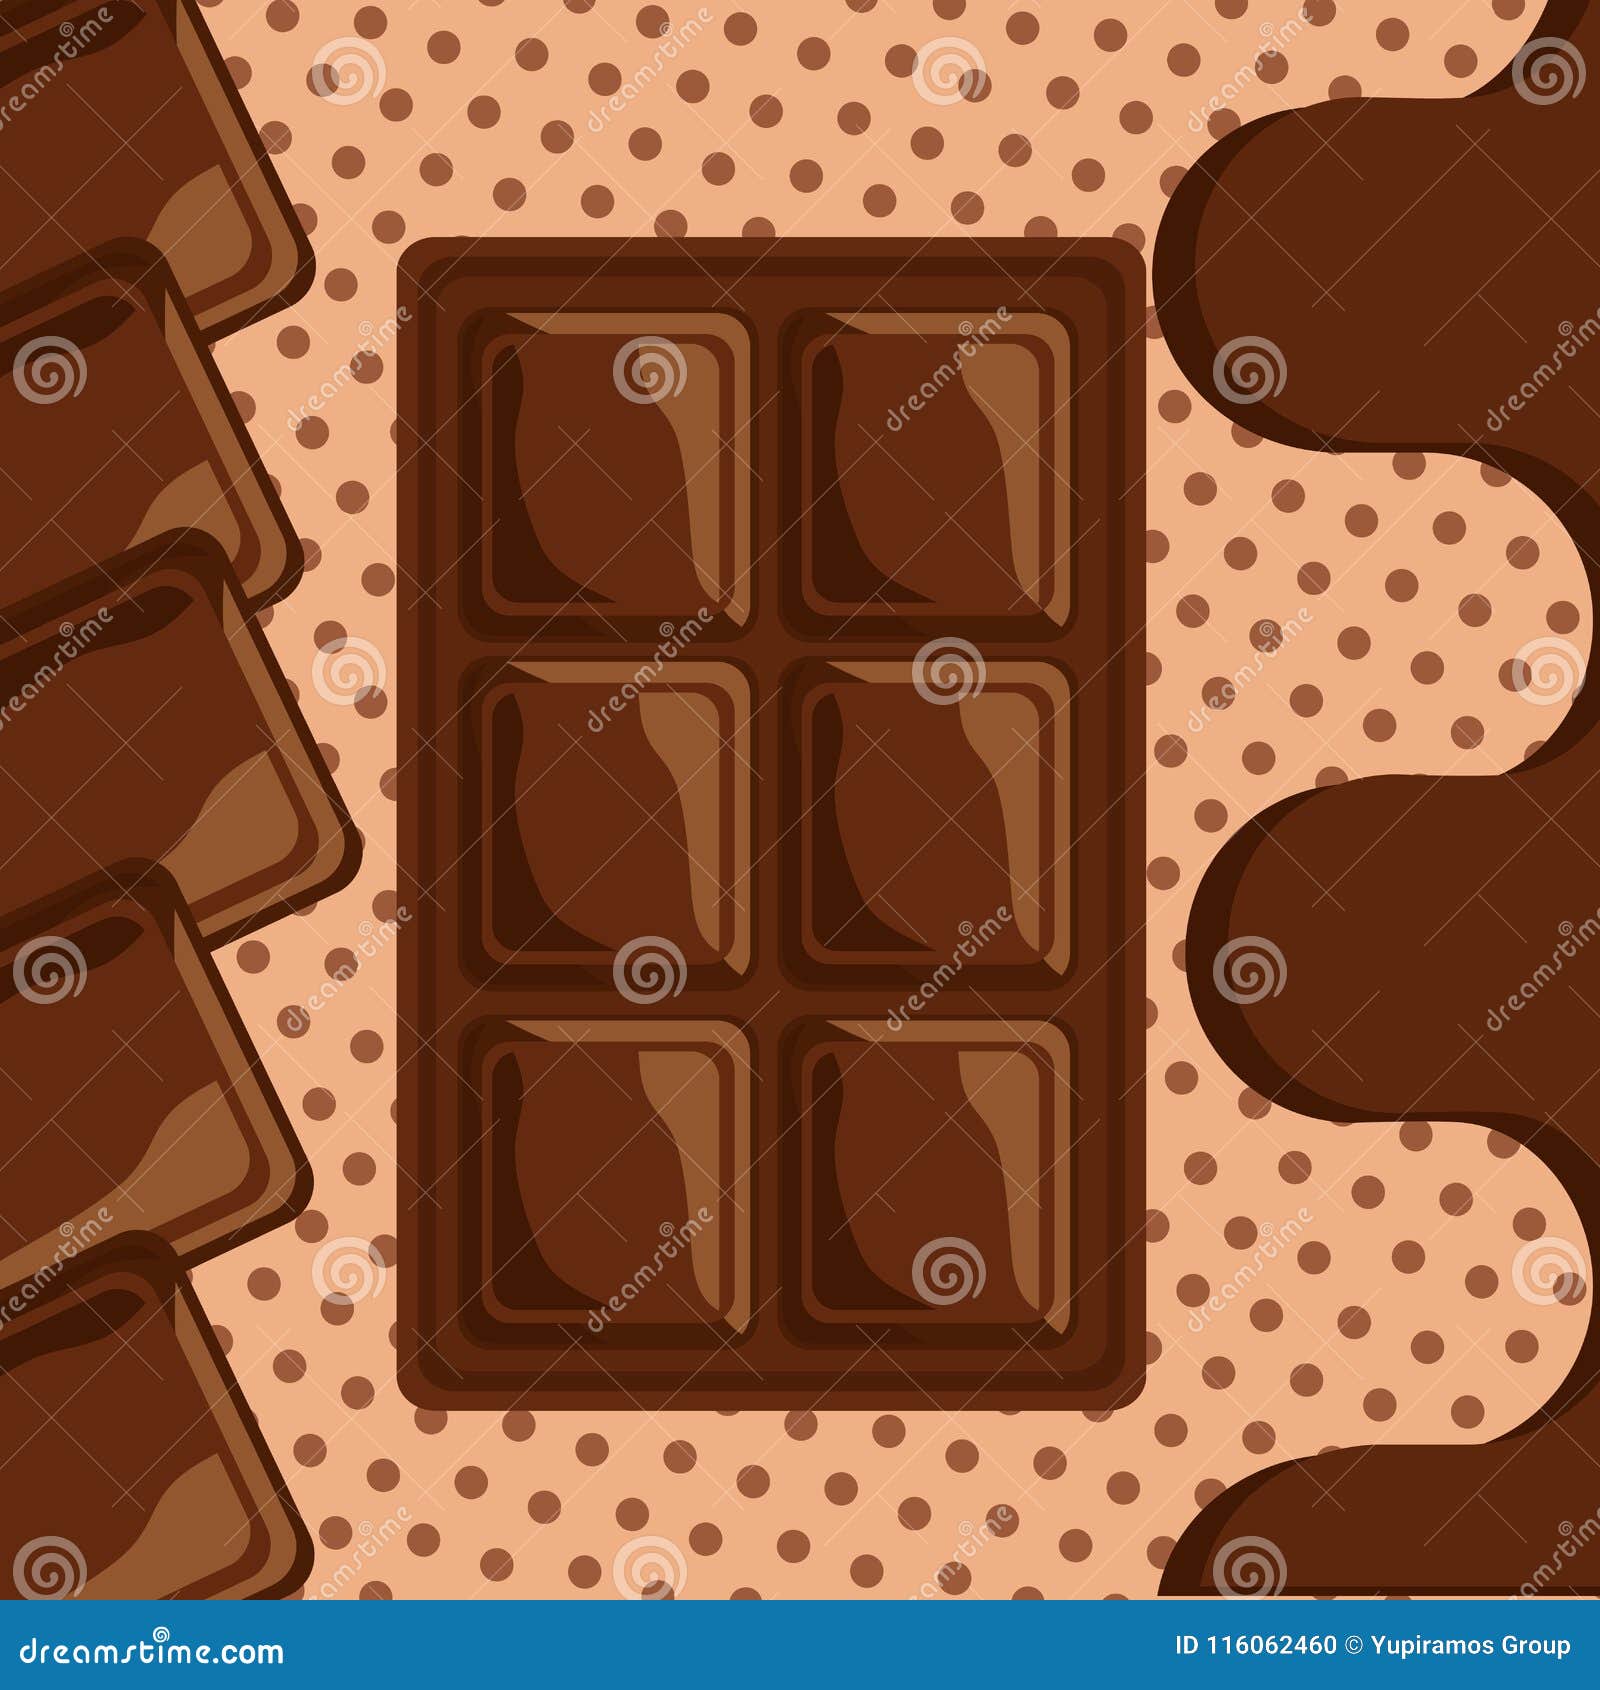 Точки шоколад. Какао карта. Молочный шоколад иллюстрация вектор. Карточка шоколад. Рисунок очень очень легкий шоколад с какао.